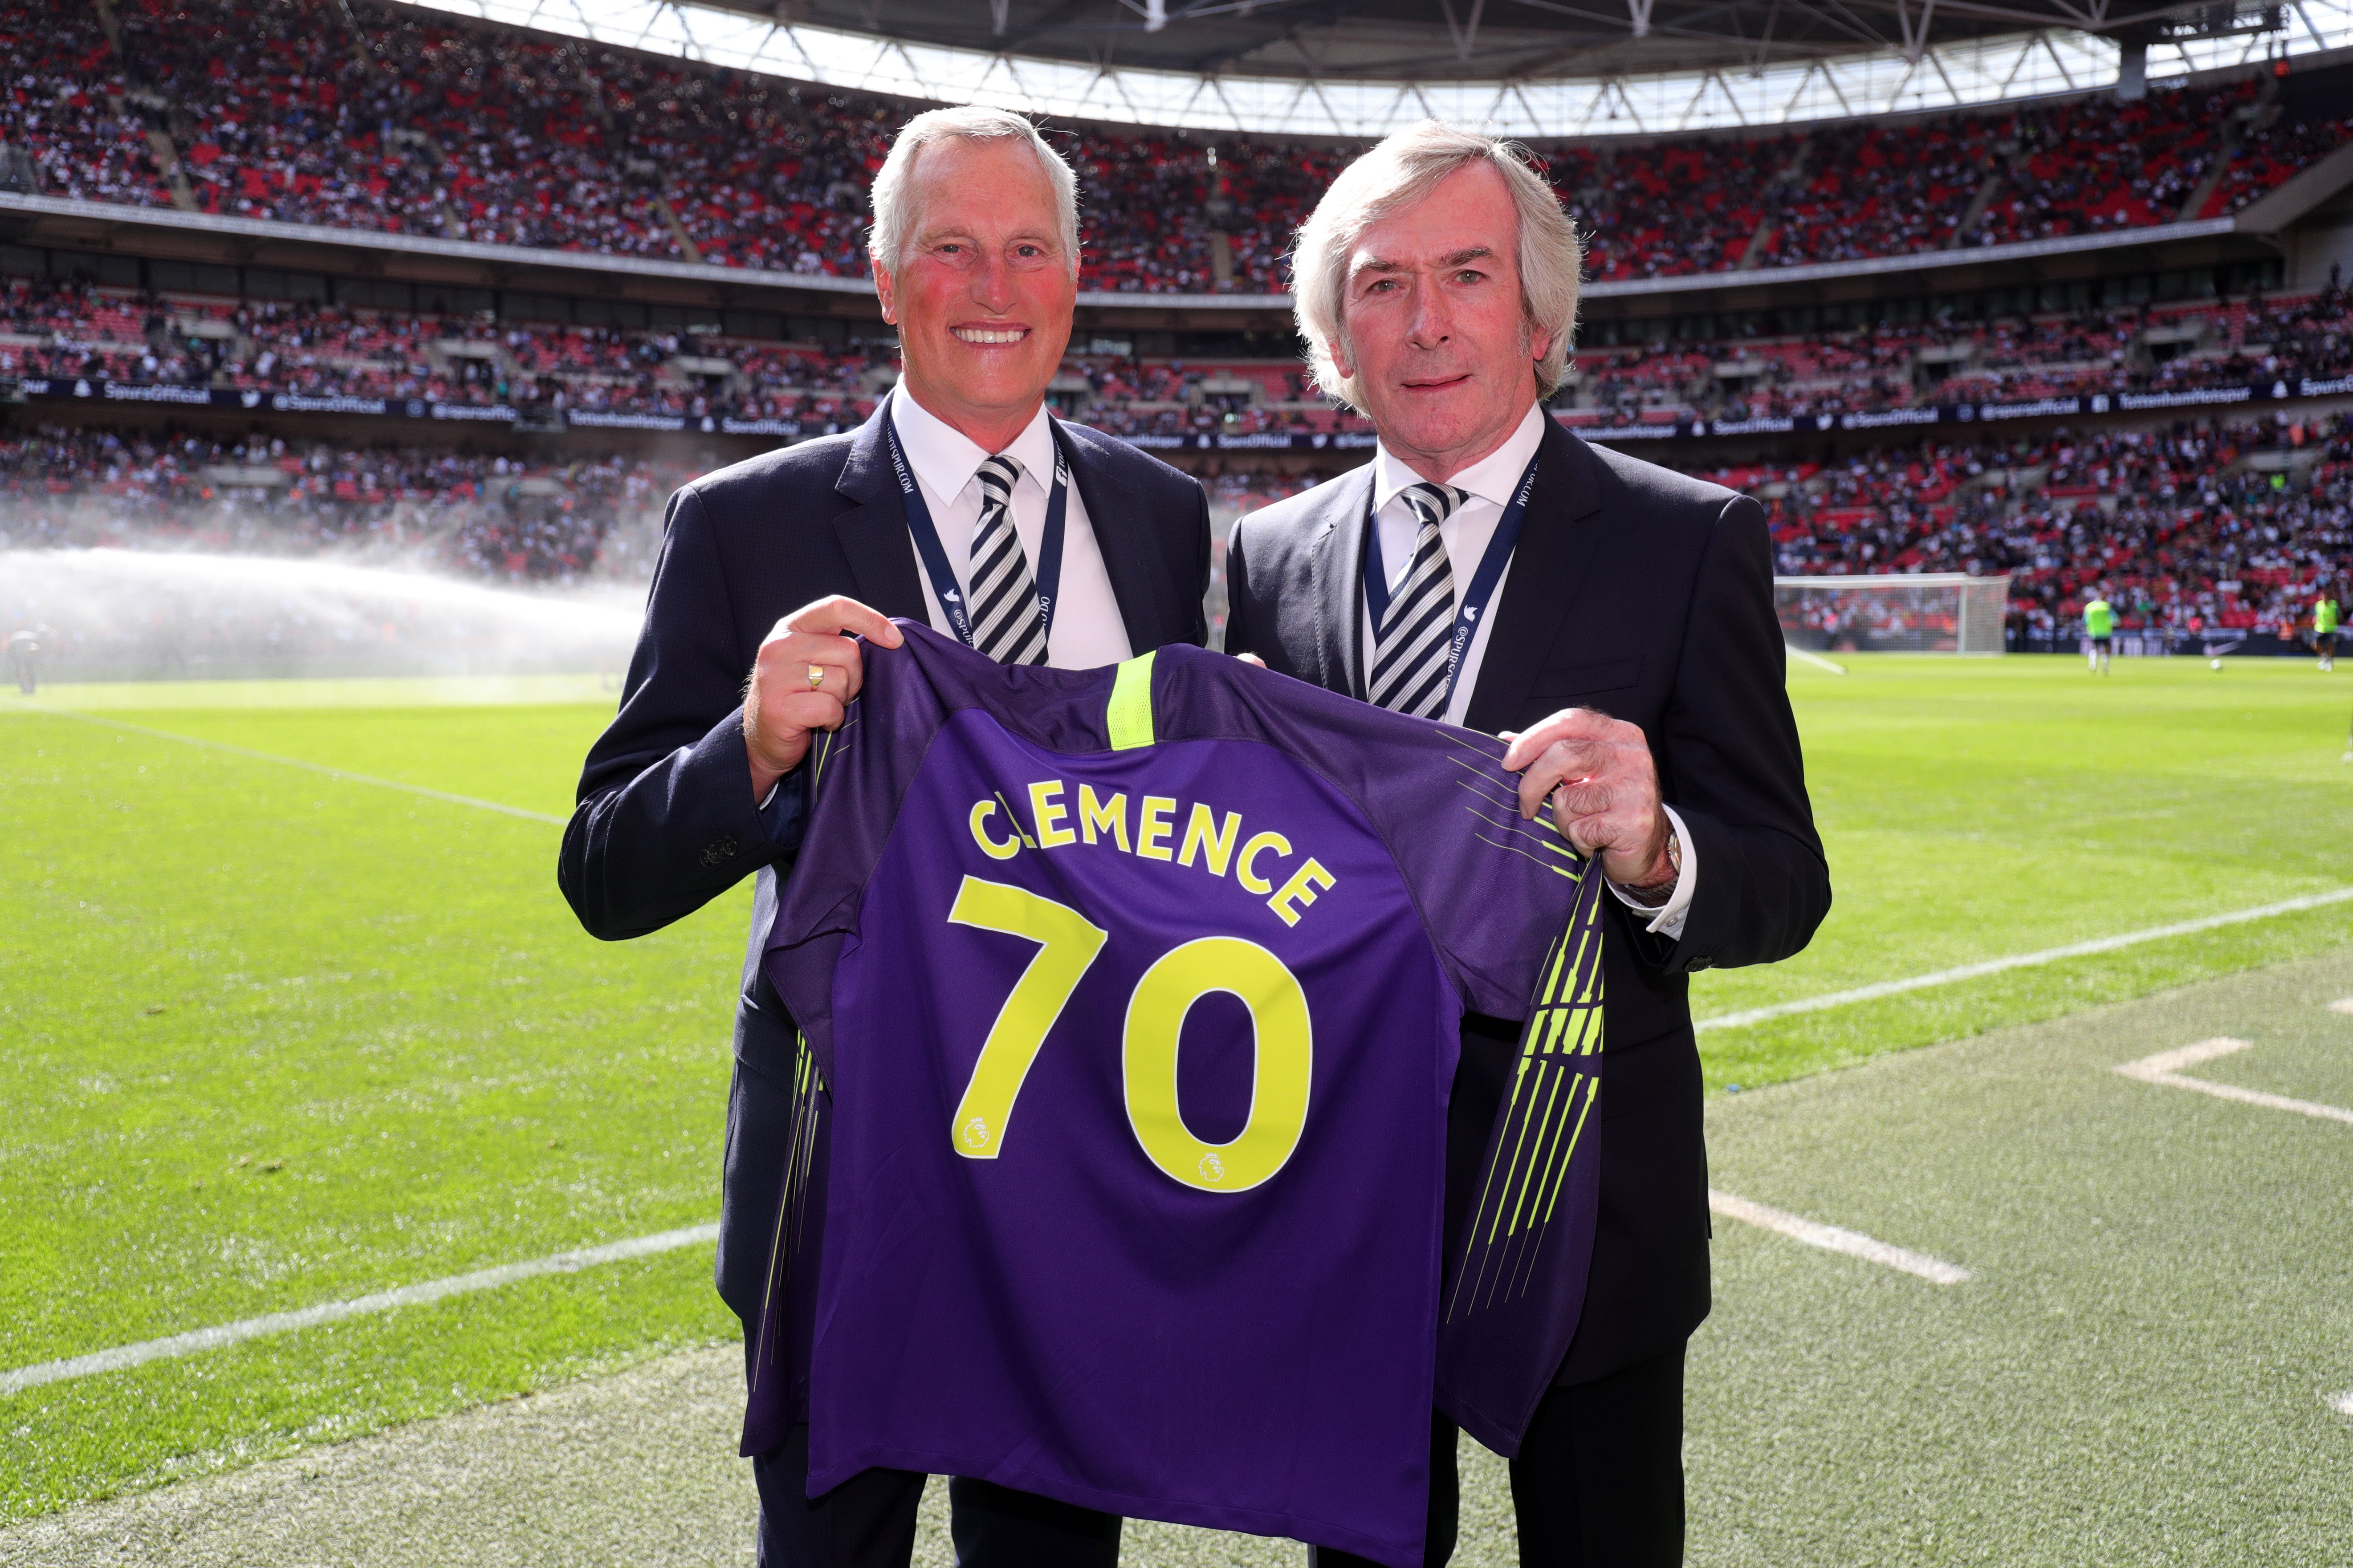 <p>LONDRES, INGLATERRA - 15 DE SEPTIEMBRE: Pat Jennings (R) presenta a Ray Clemence una camiseta en el descanso del partido de la Premier League entre el Tottenham Hotspur y el Liverpool FC en el Estadio de Wembley el 15 de septiembre de 2018 en Londres, Reino Unido.&nbsp;</p>